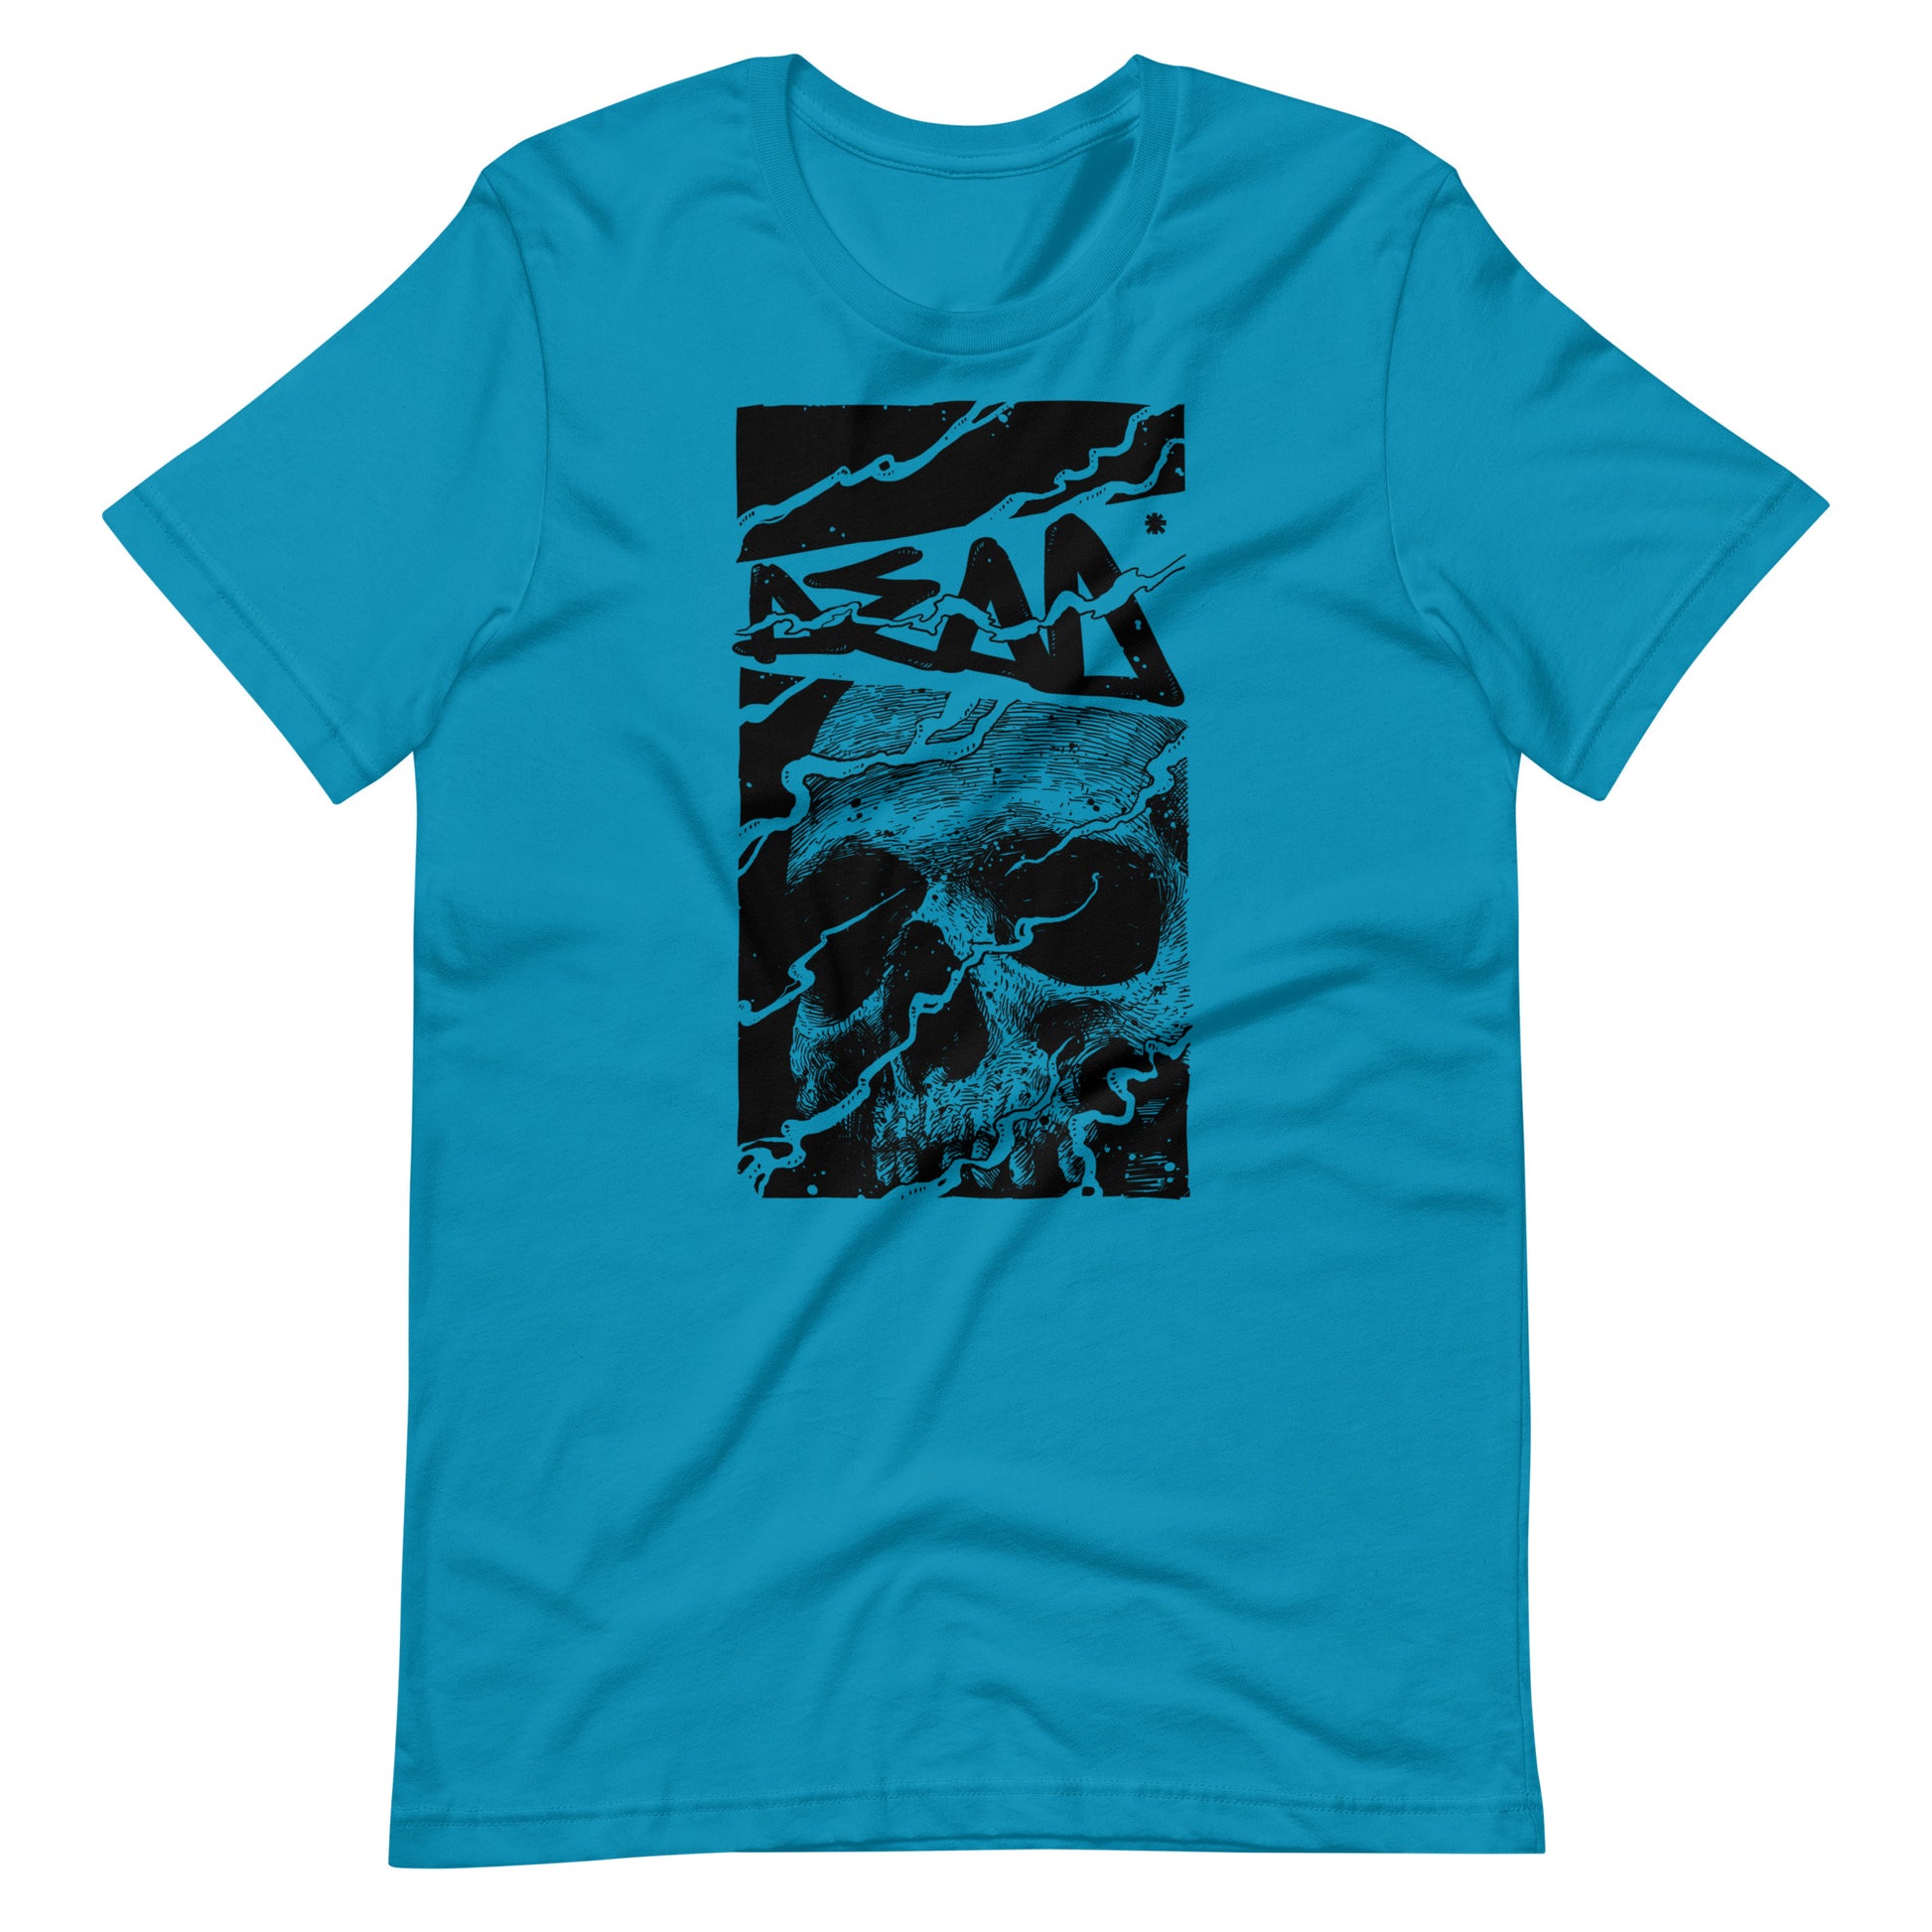 Skull Dead Black - Men's t-shirt - Aqua Front